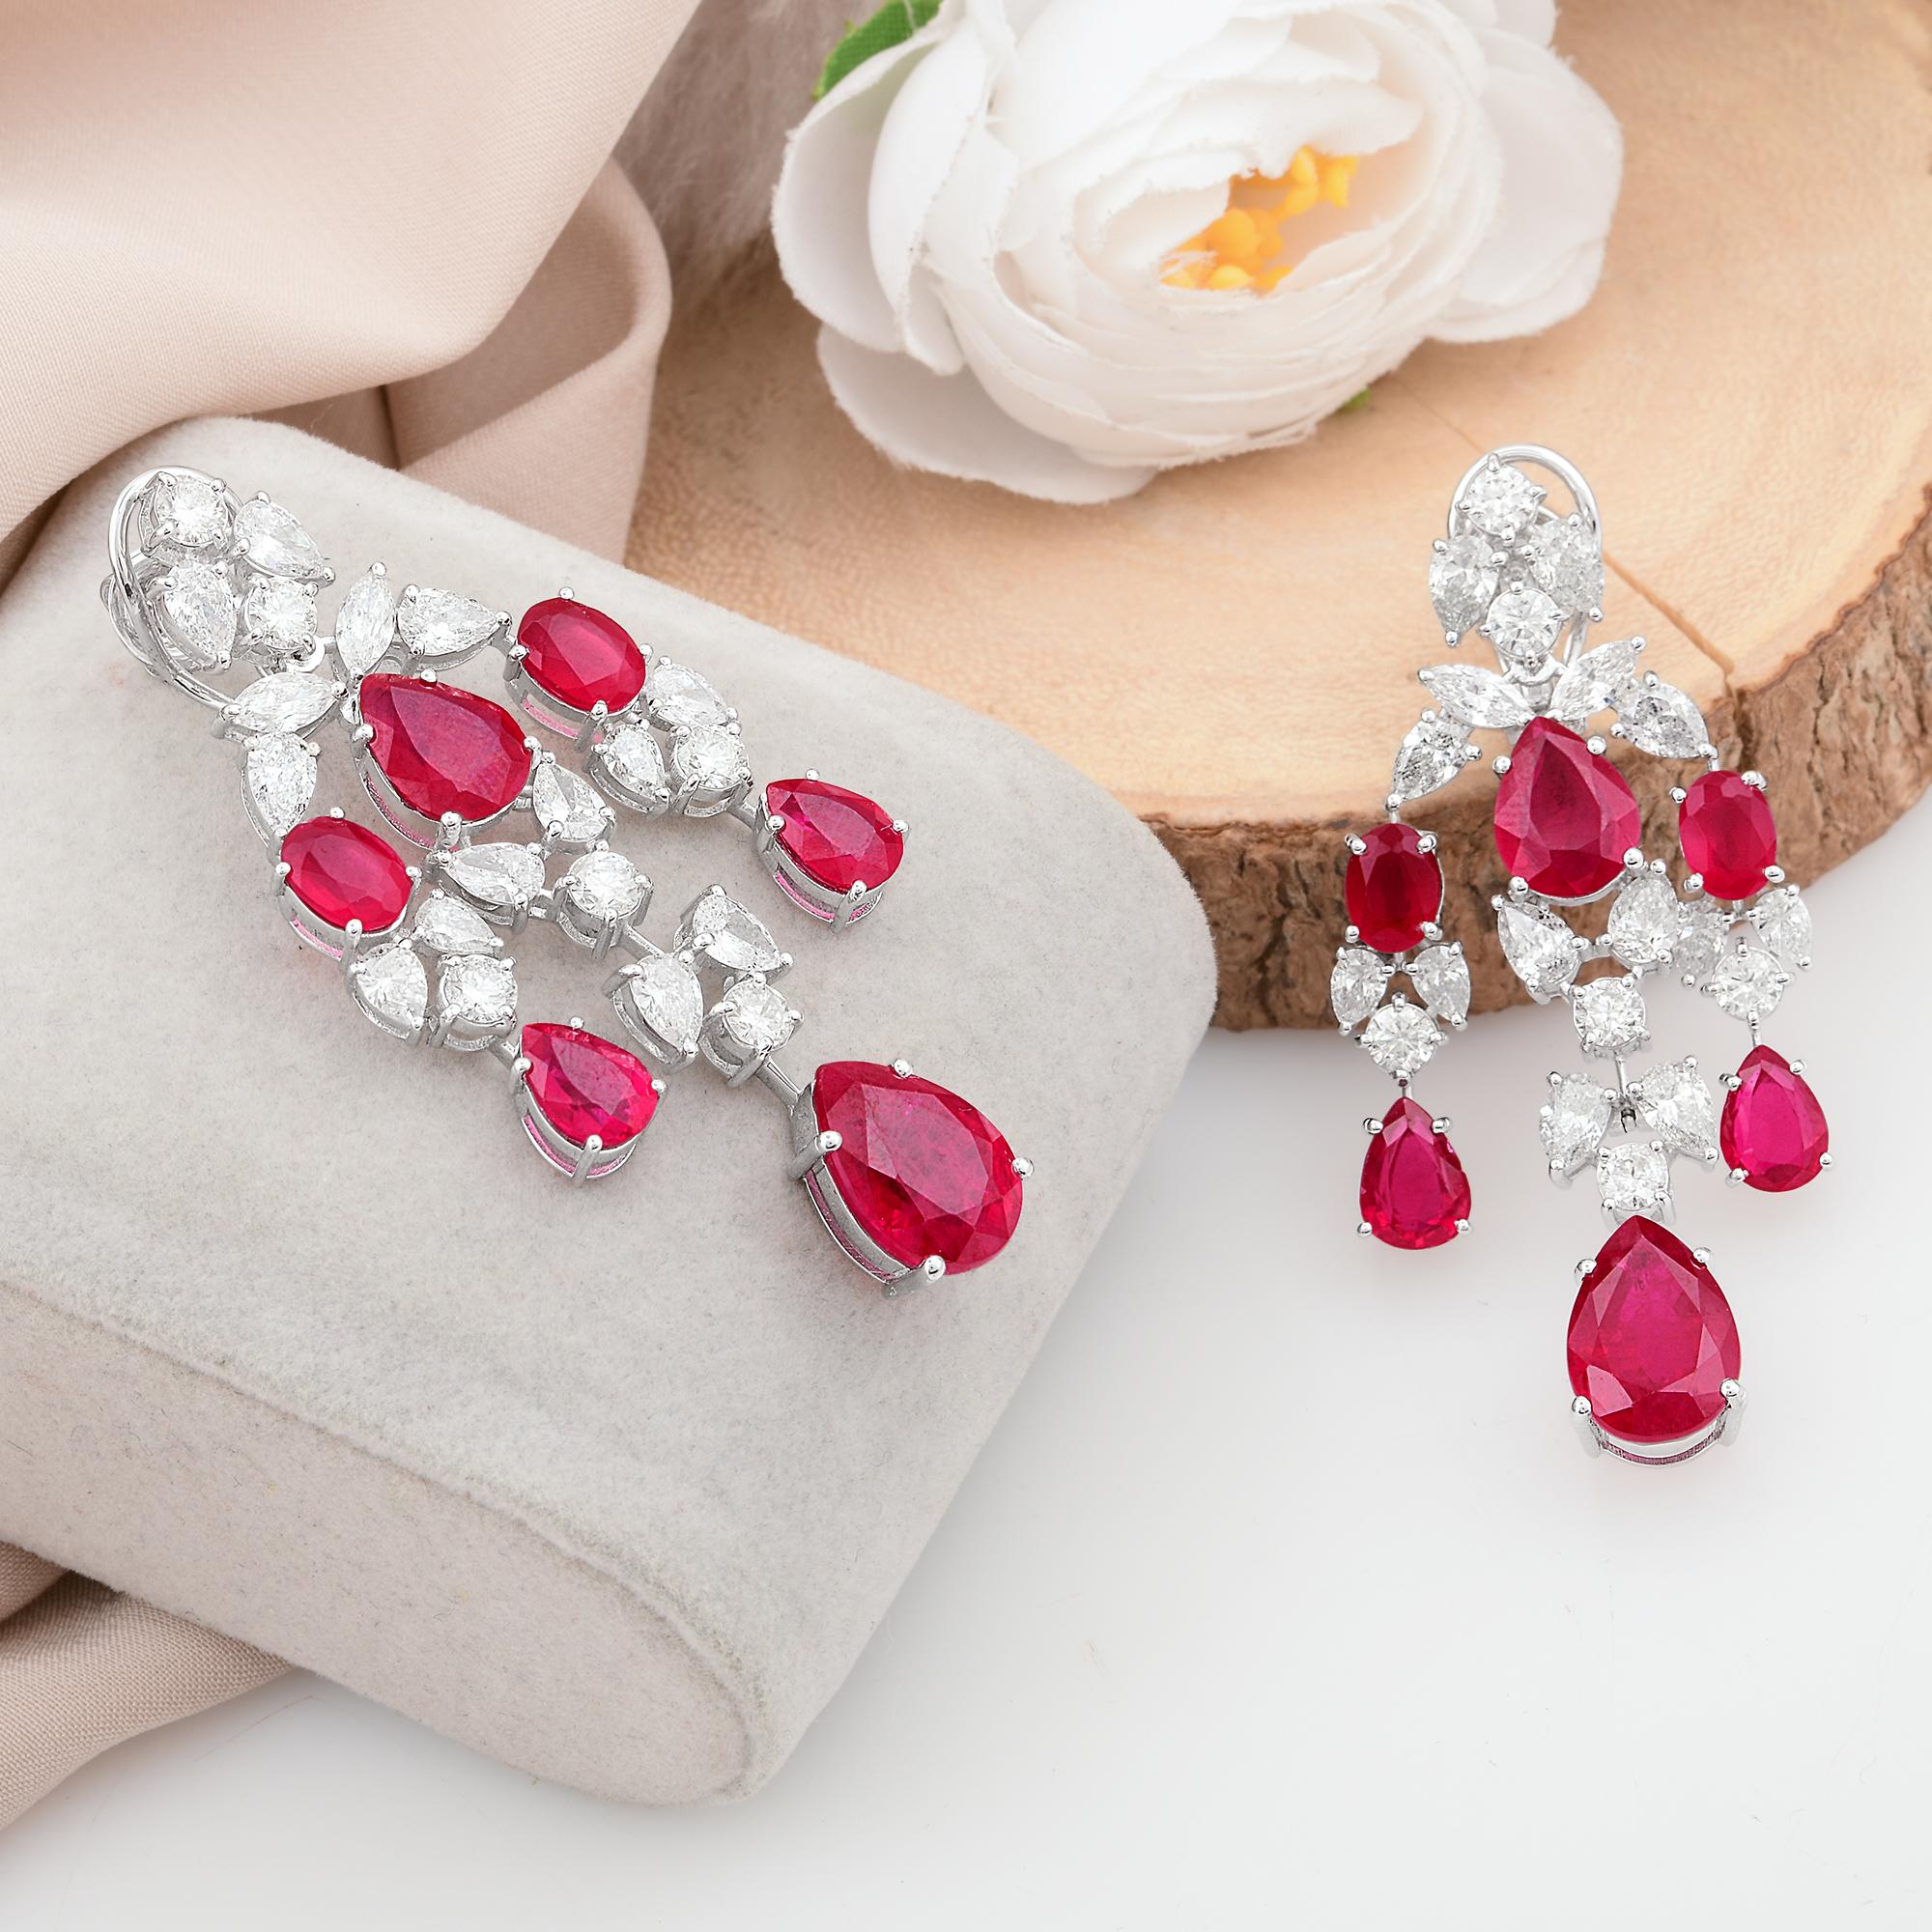 Oval Cut Gemstone Chandelier Earrings Diamond Solid 14k White Gold Handmade Fine Jewelry For Sale